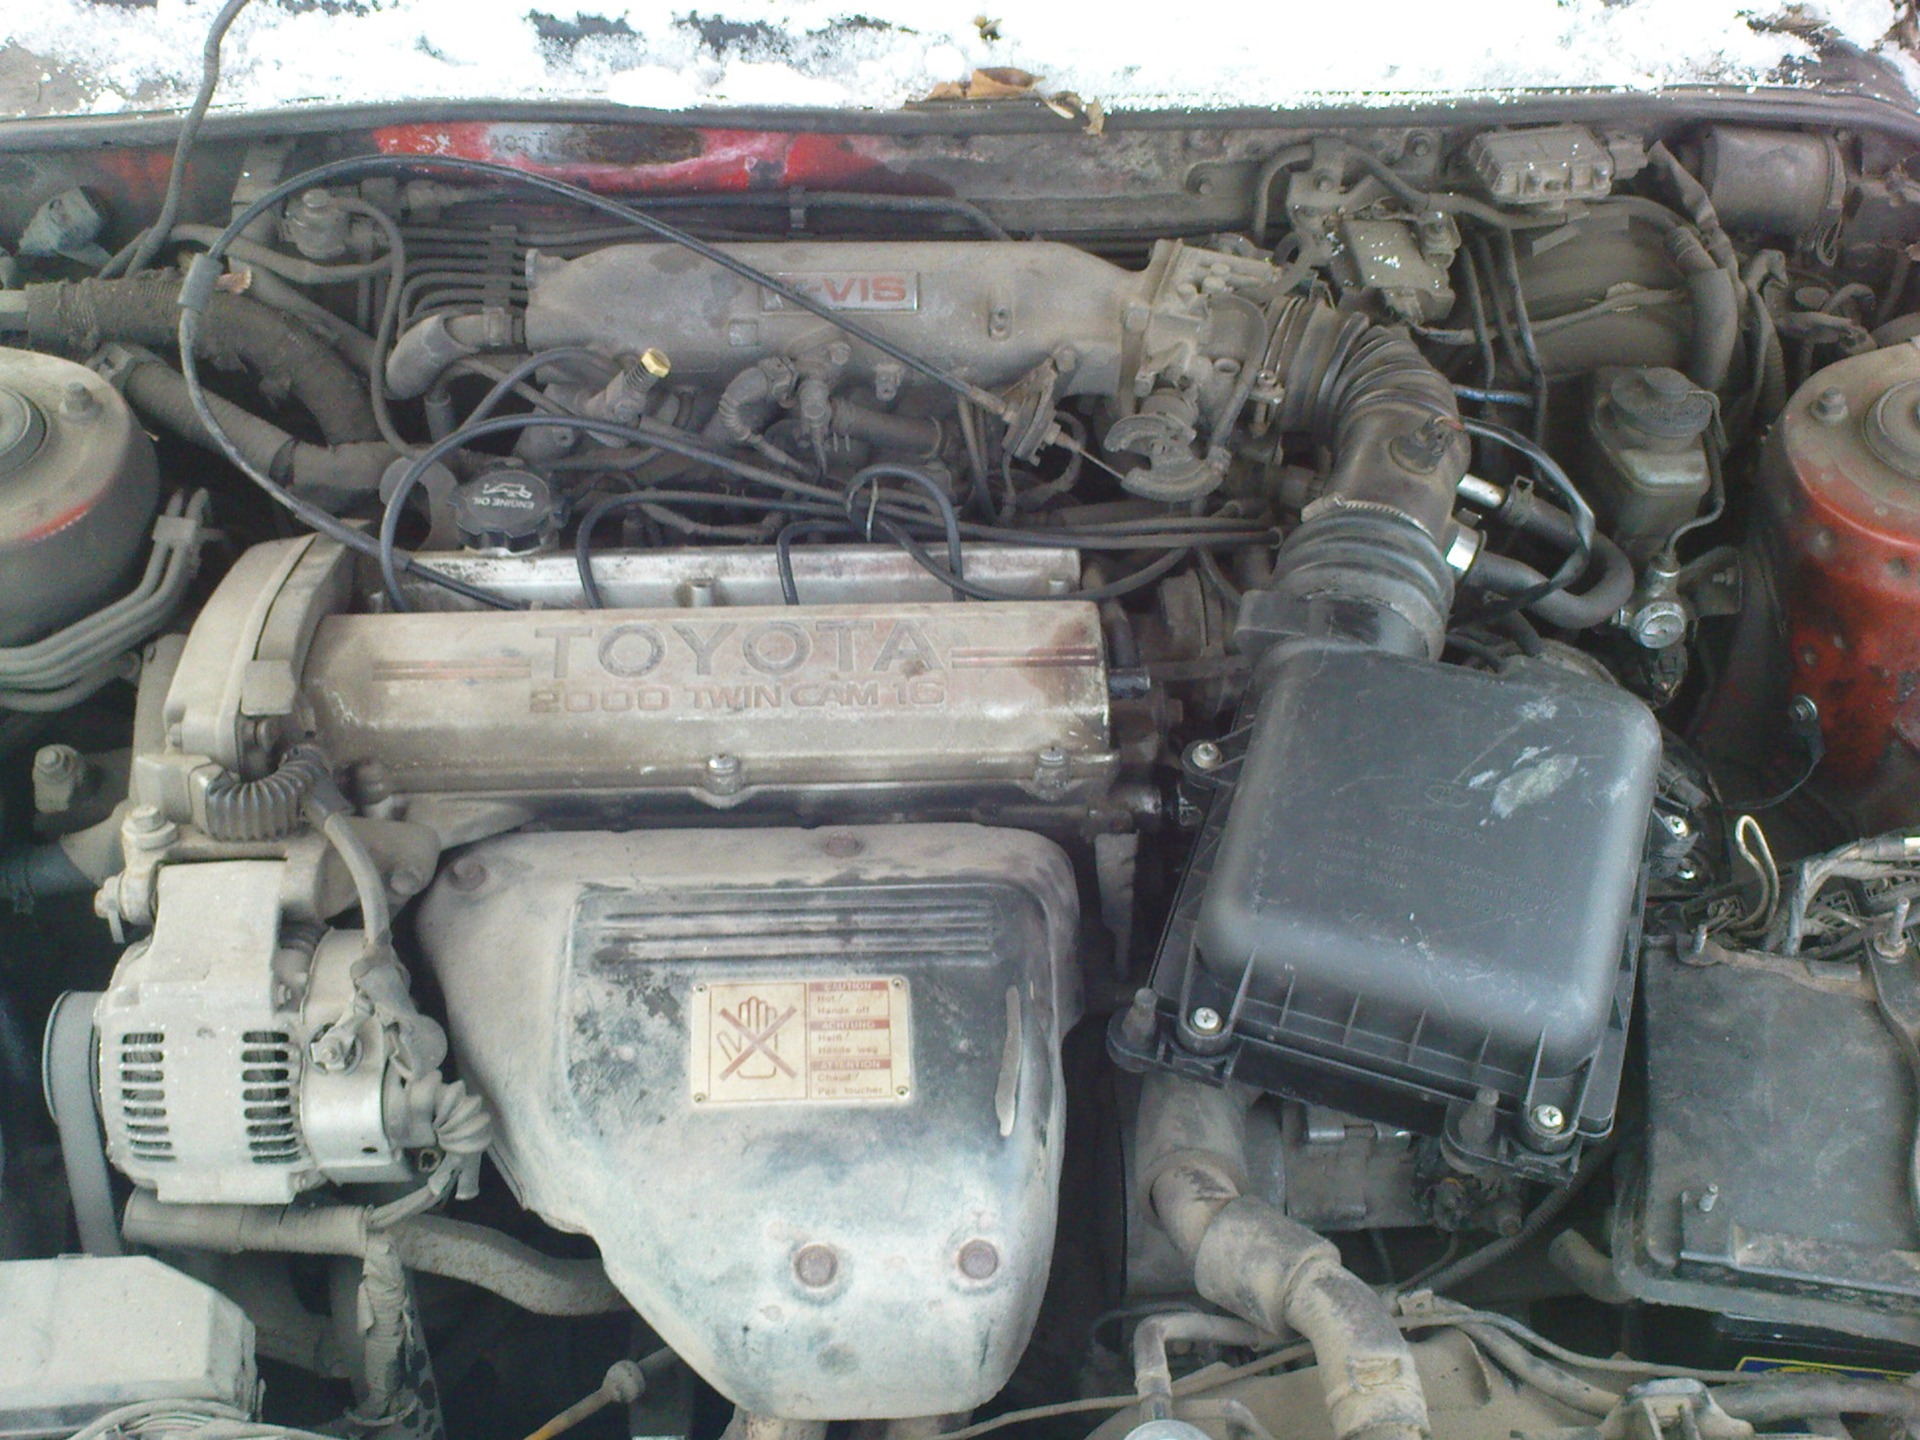   3s-ge 1-generation Toyota Celica 20 1991